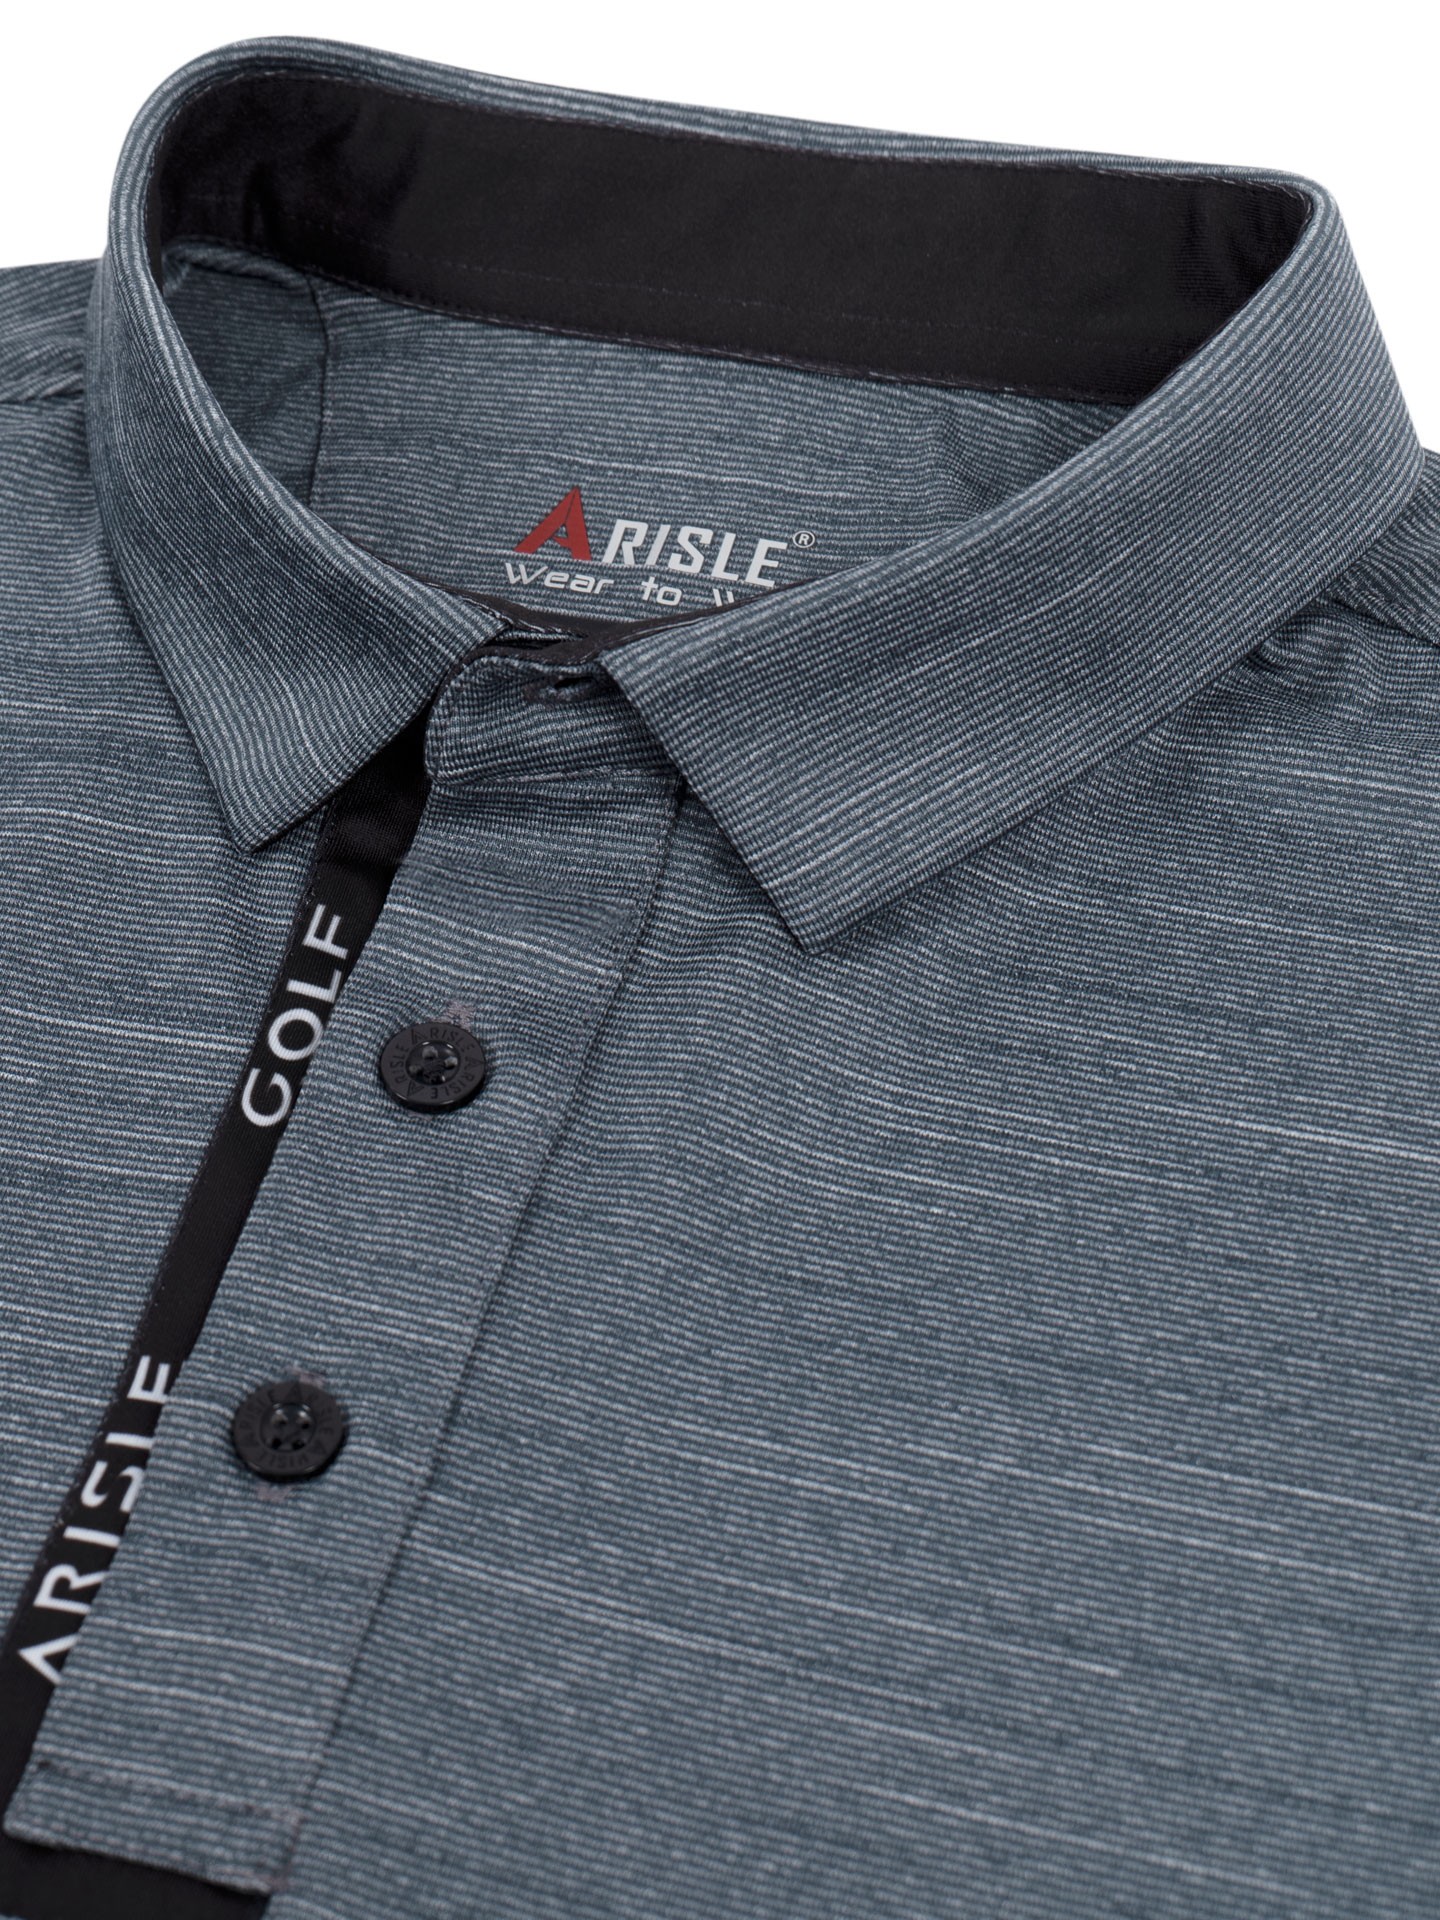 Áo Polo Golf ARISLE Ribb Cuff Steel Grey